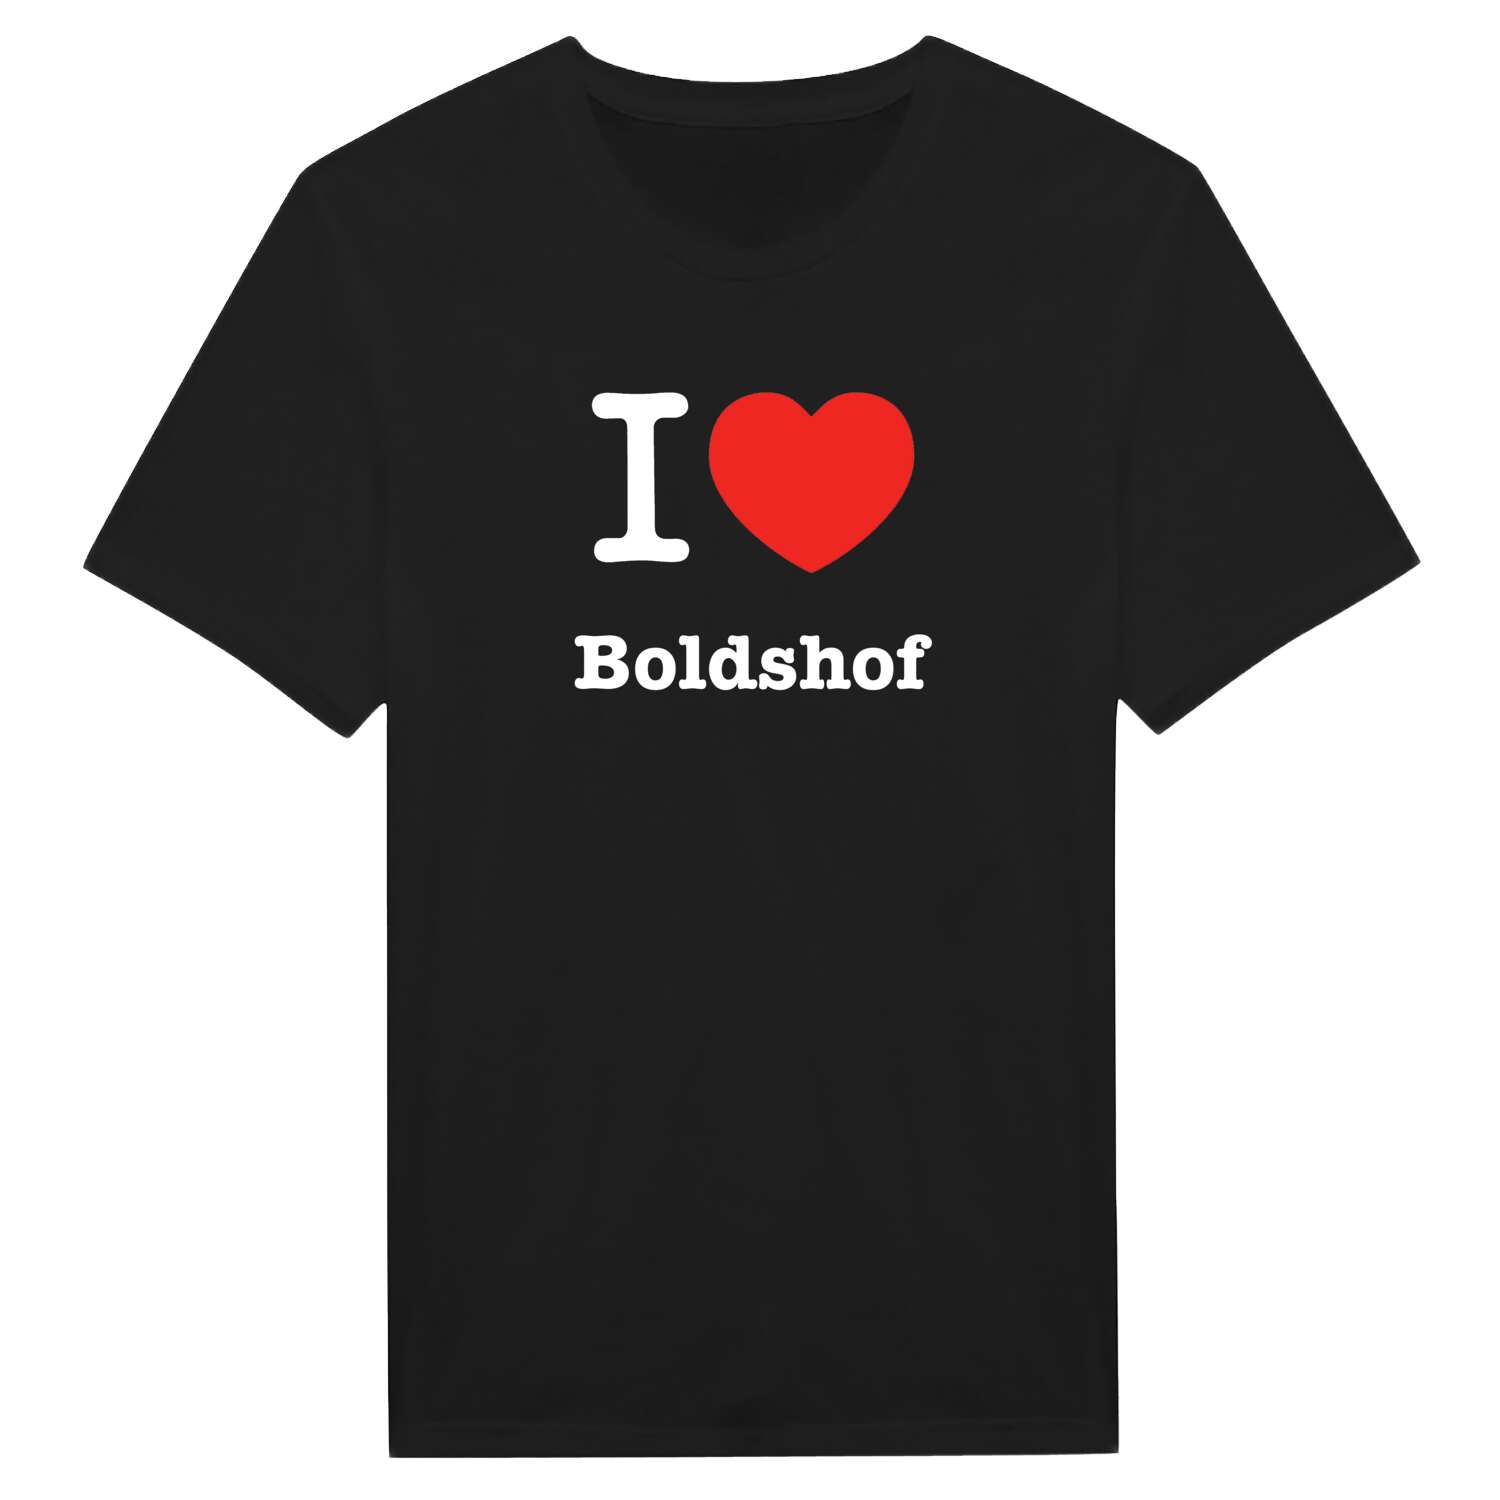 Boldshof T-Shirt »I love«